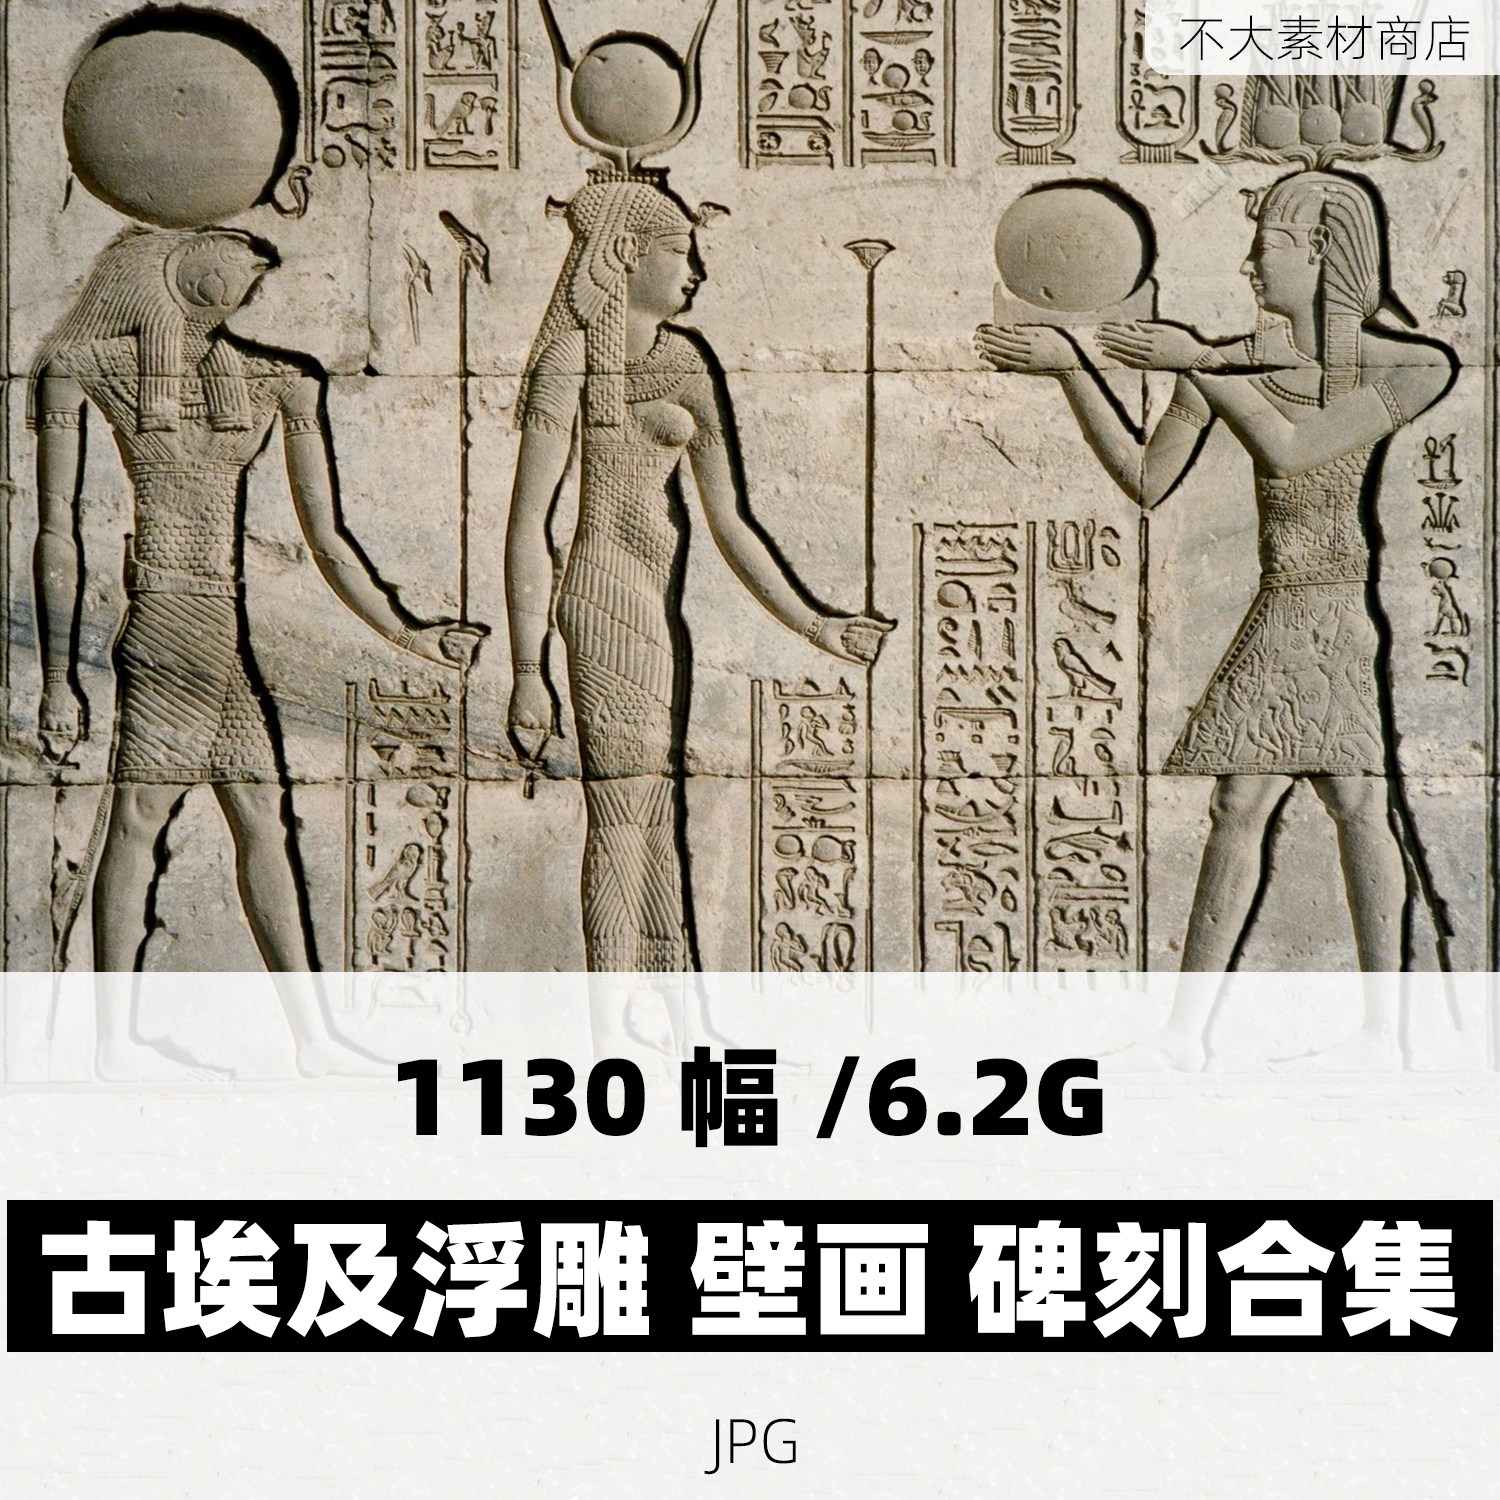 古代埃及浮雕雕塑壁画碑刻照片合集高清电子版素材图片古文字资料